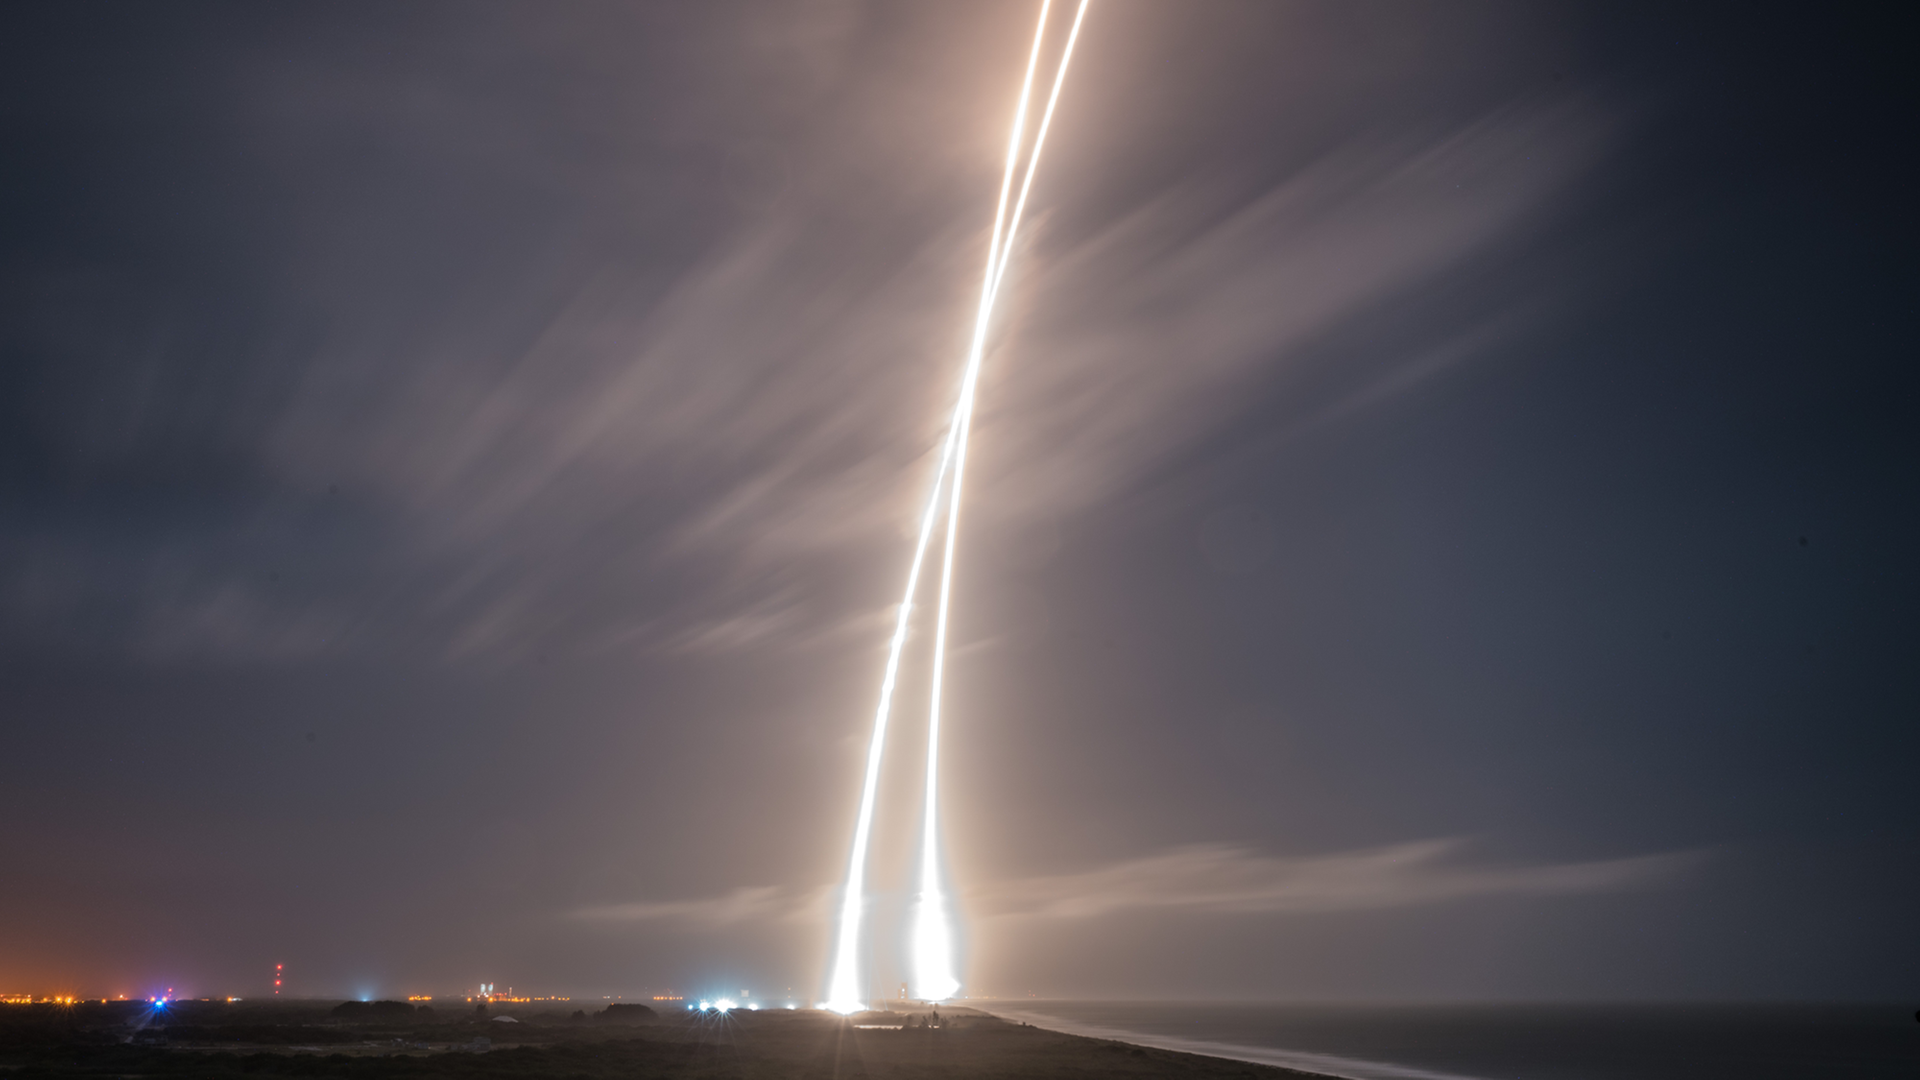 Die Langzeitfotografie zeigt Start, Rückkehr und glückliche Landung der Trägerrakete "Falcon 9" in Cape Canaveral in Florida am 21. Dezember 2015. Zwei frühere Landeversuche waren gescheitert.